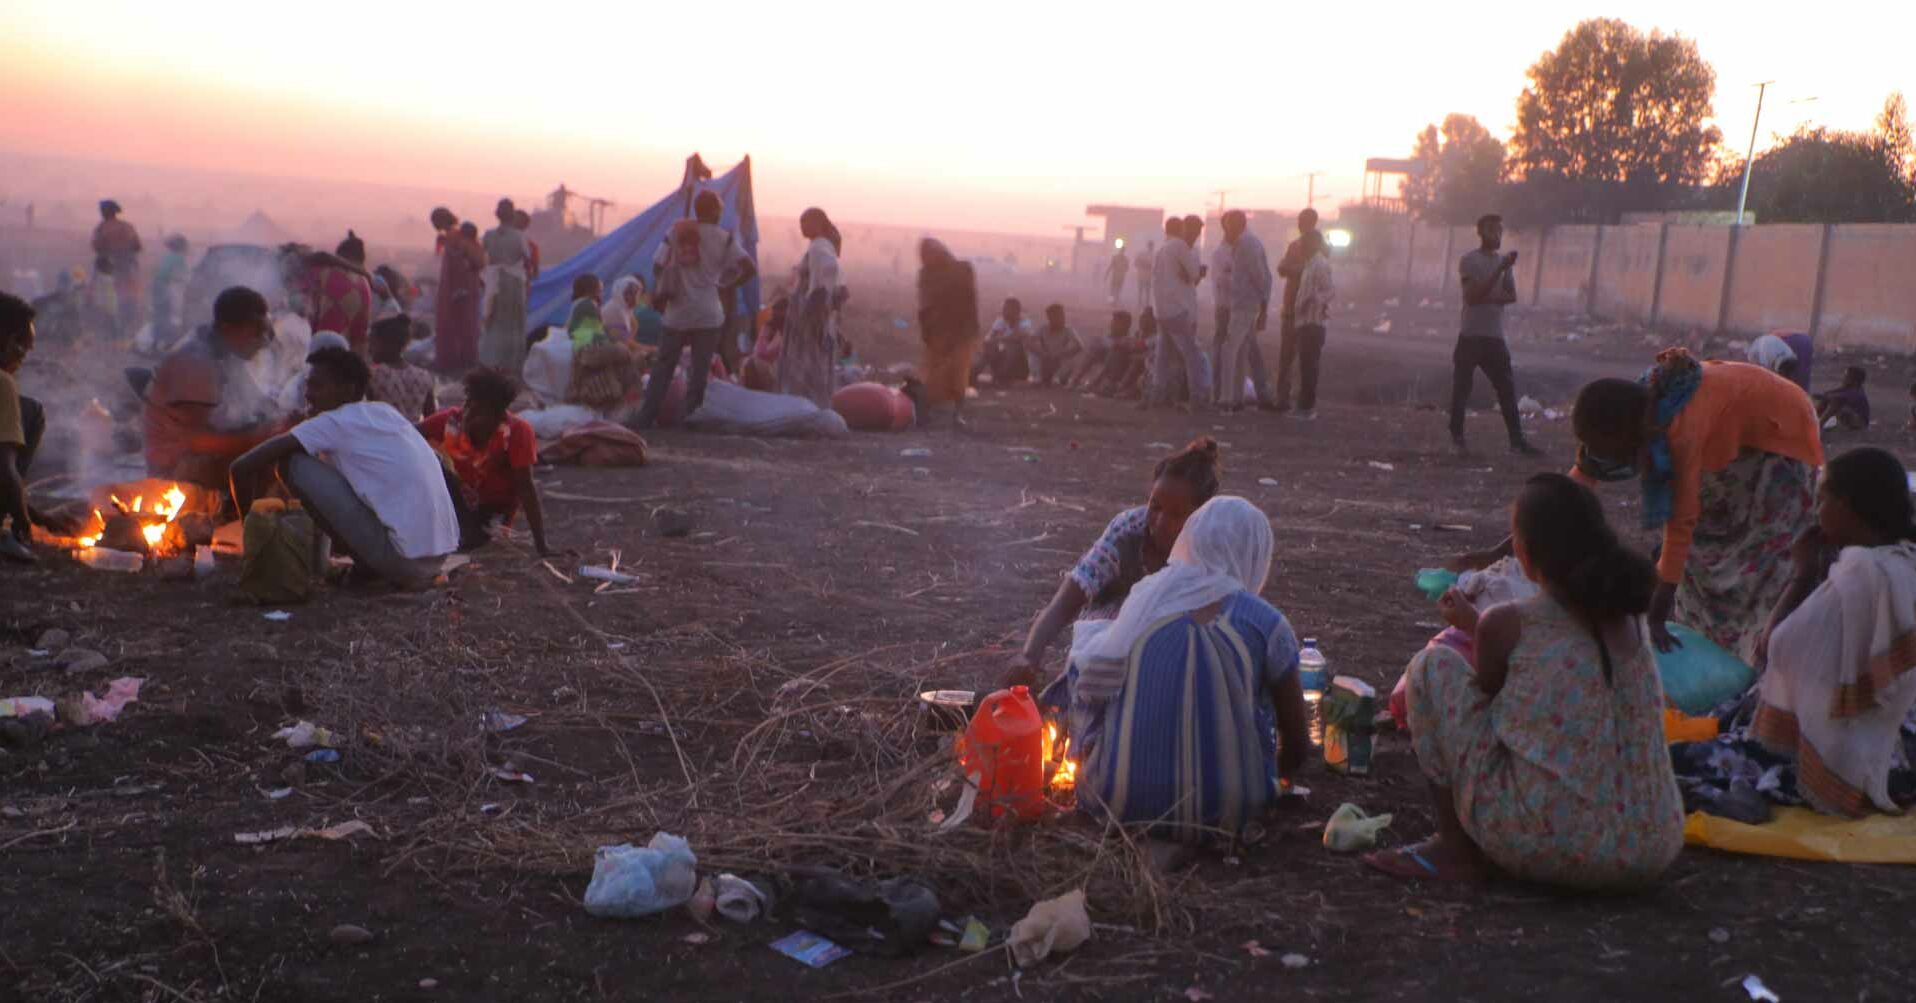 Gruppe von Flüchtlingen im Sonnenaufgang Tigray-Aethiopien-SudanRF2314486.jpg